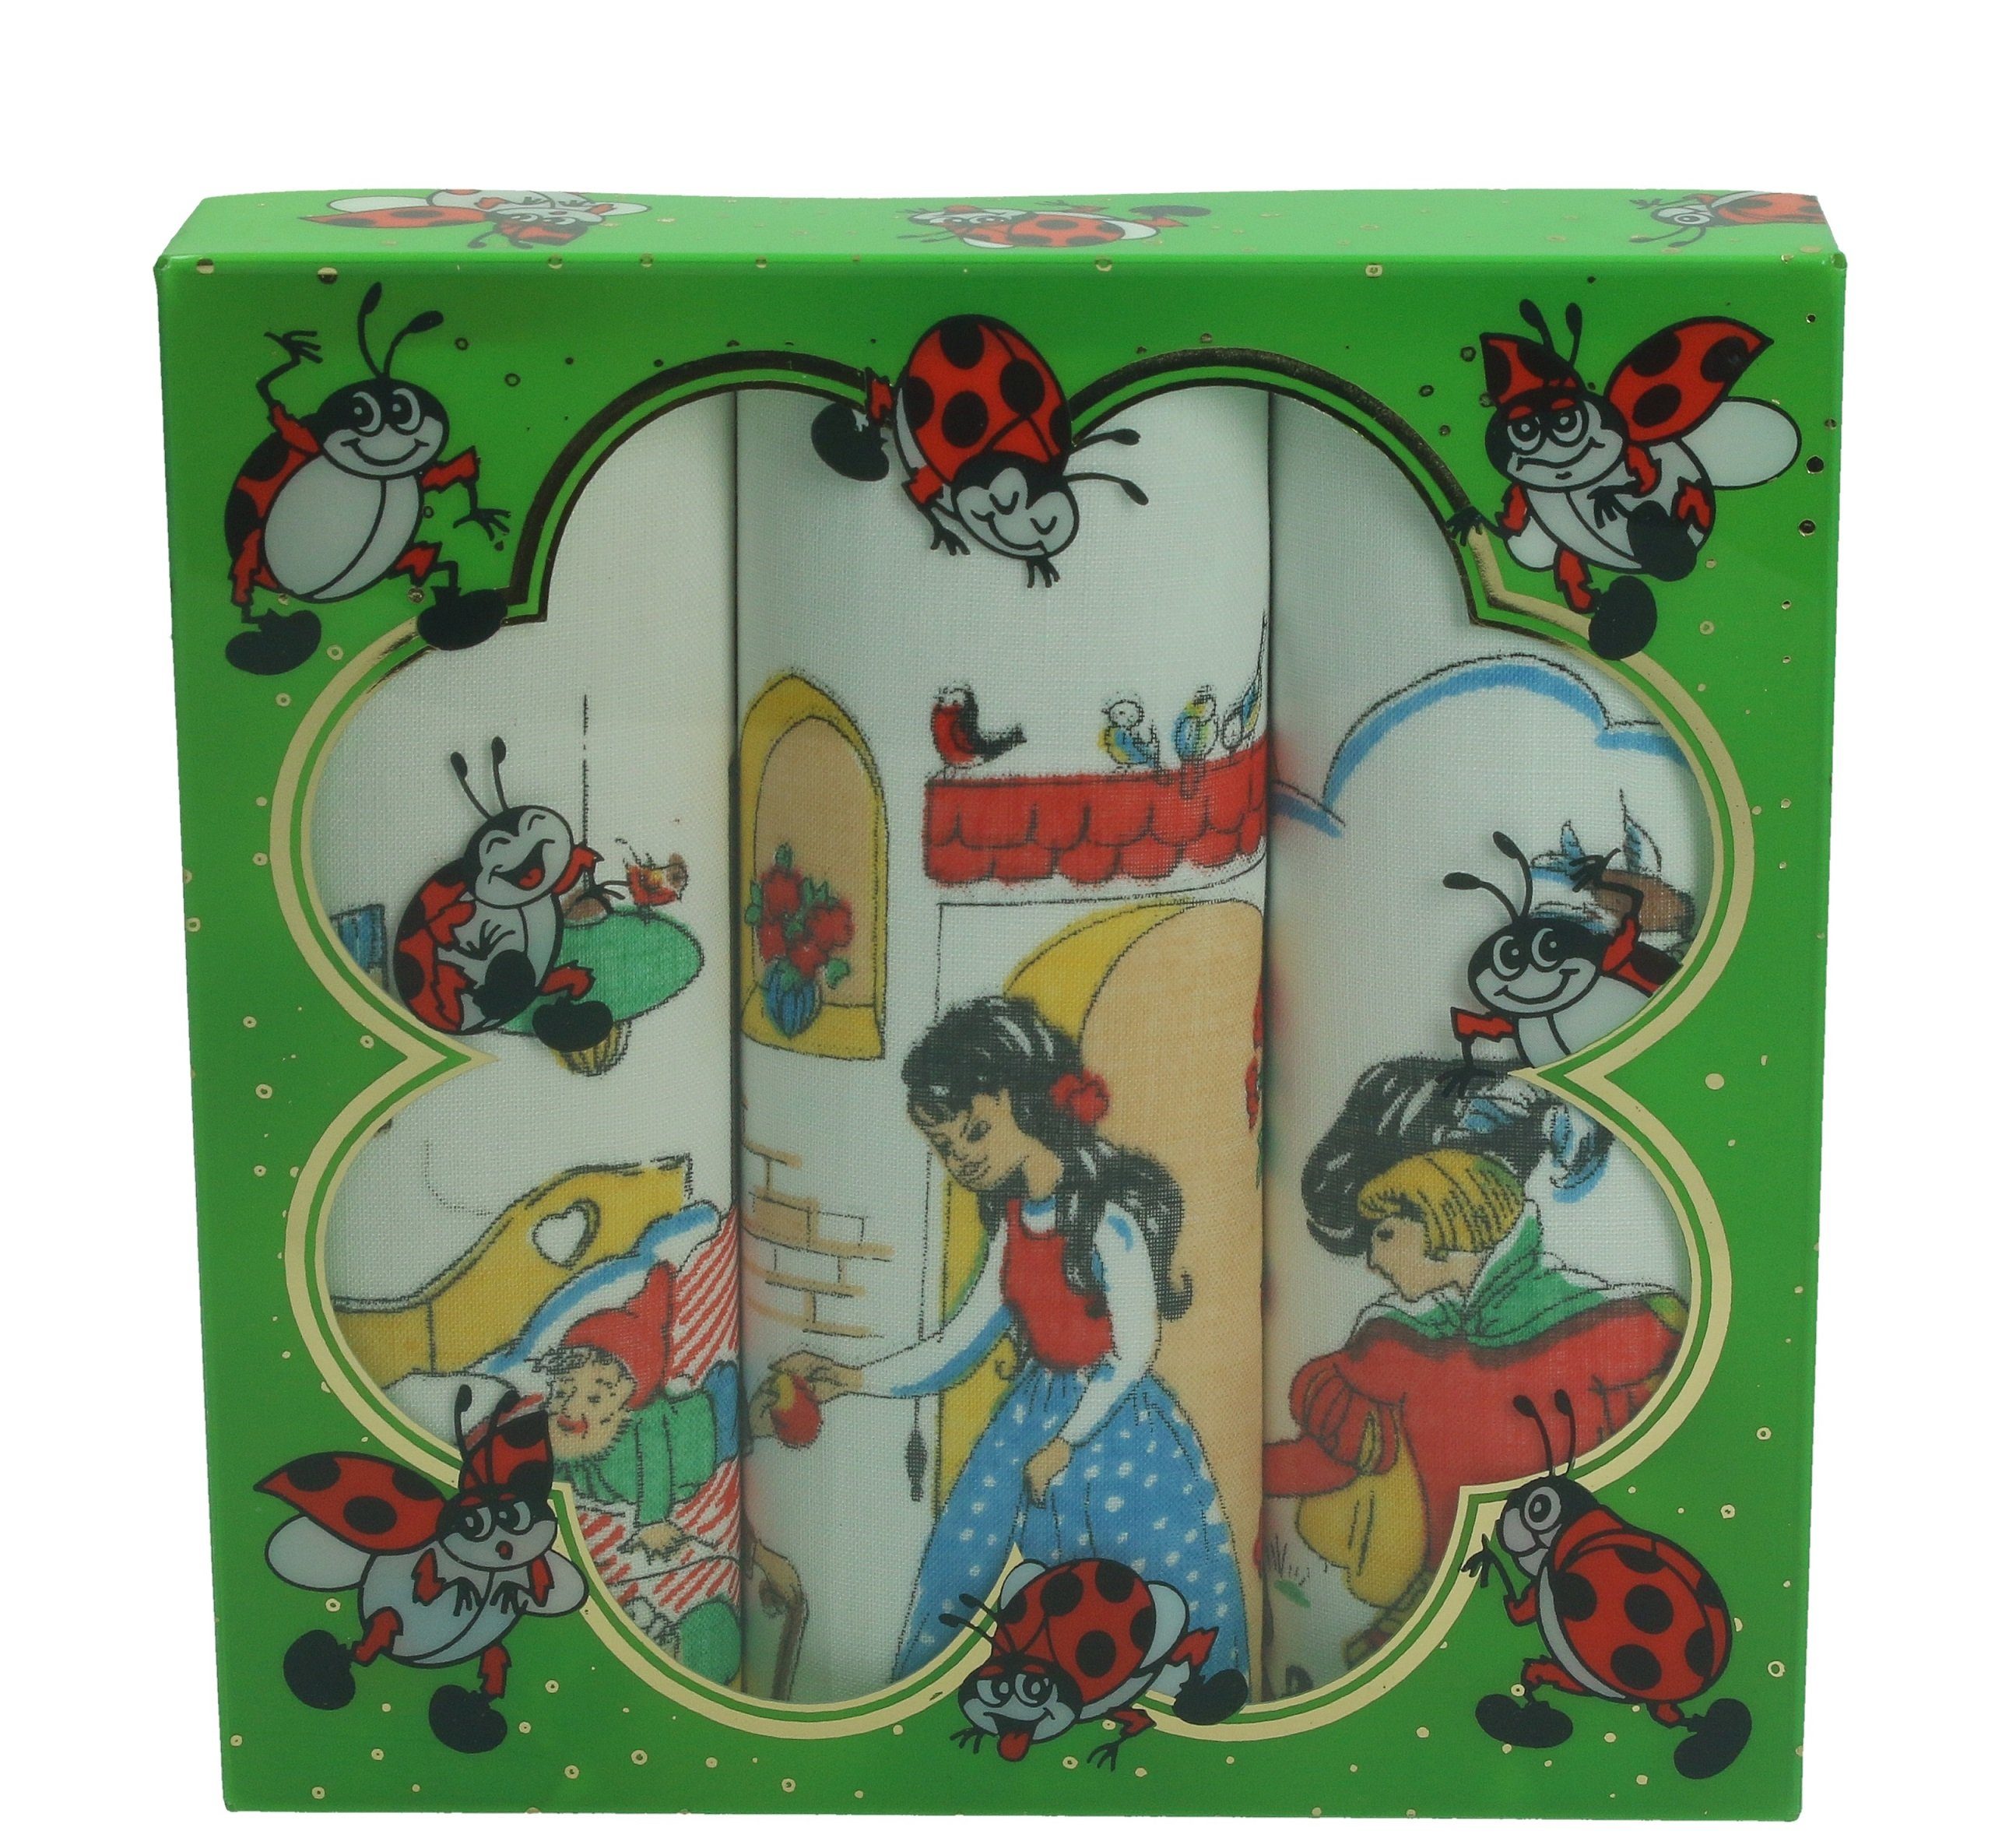 Betz Taschentuch 3 Stück Kindertaschentücher in der Geschenkbox ca. 25x25 cm 100% Baumwolle Märchen Motive Design 2 Farbe: grün